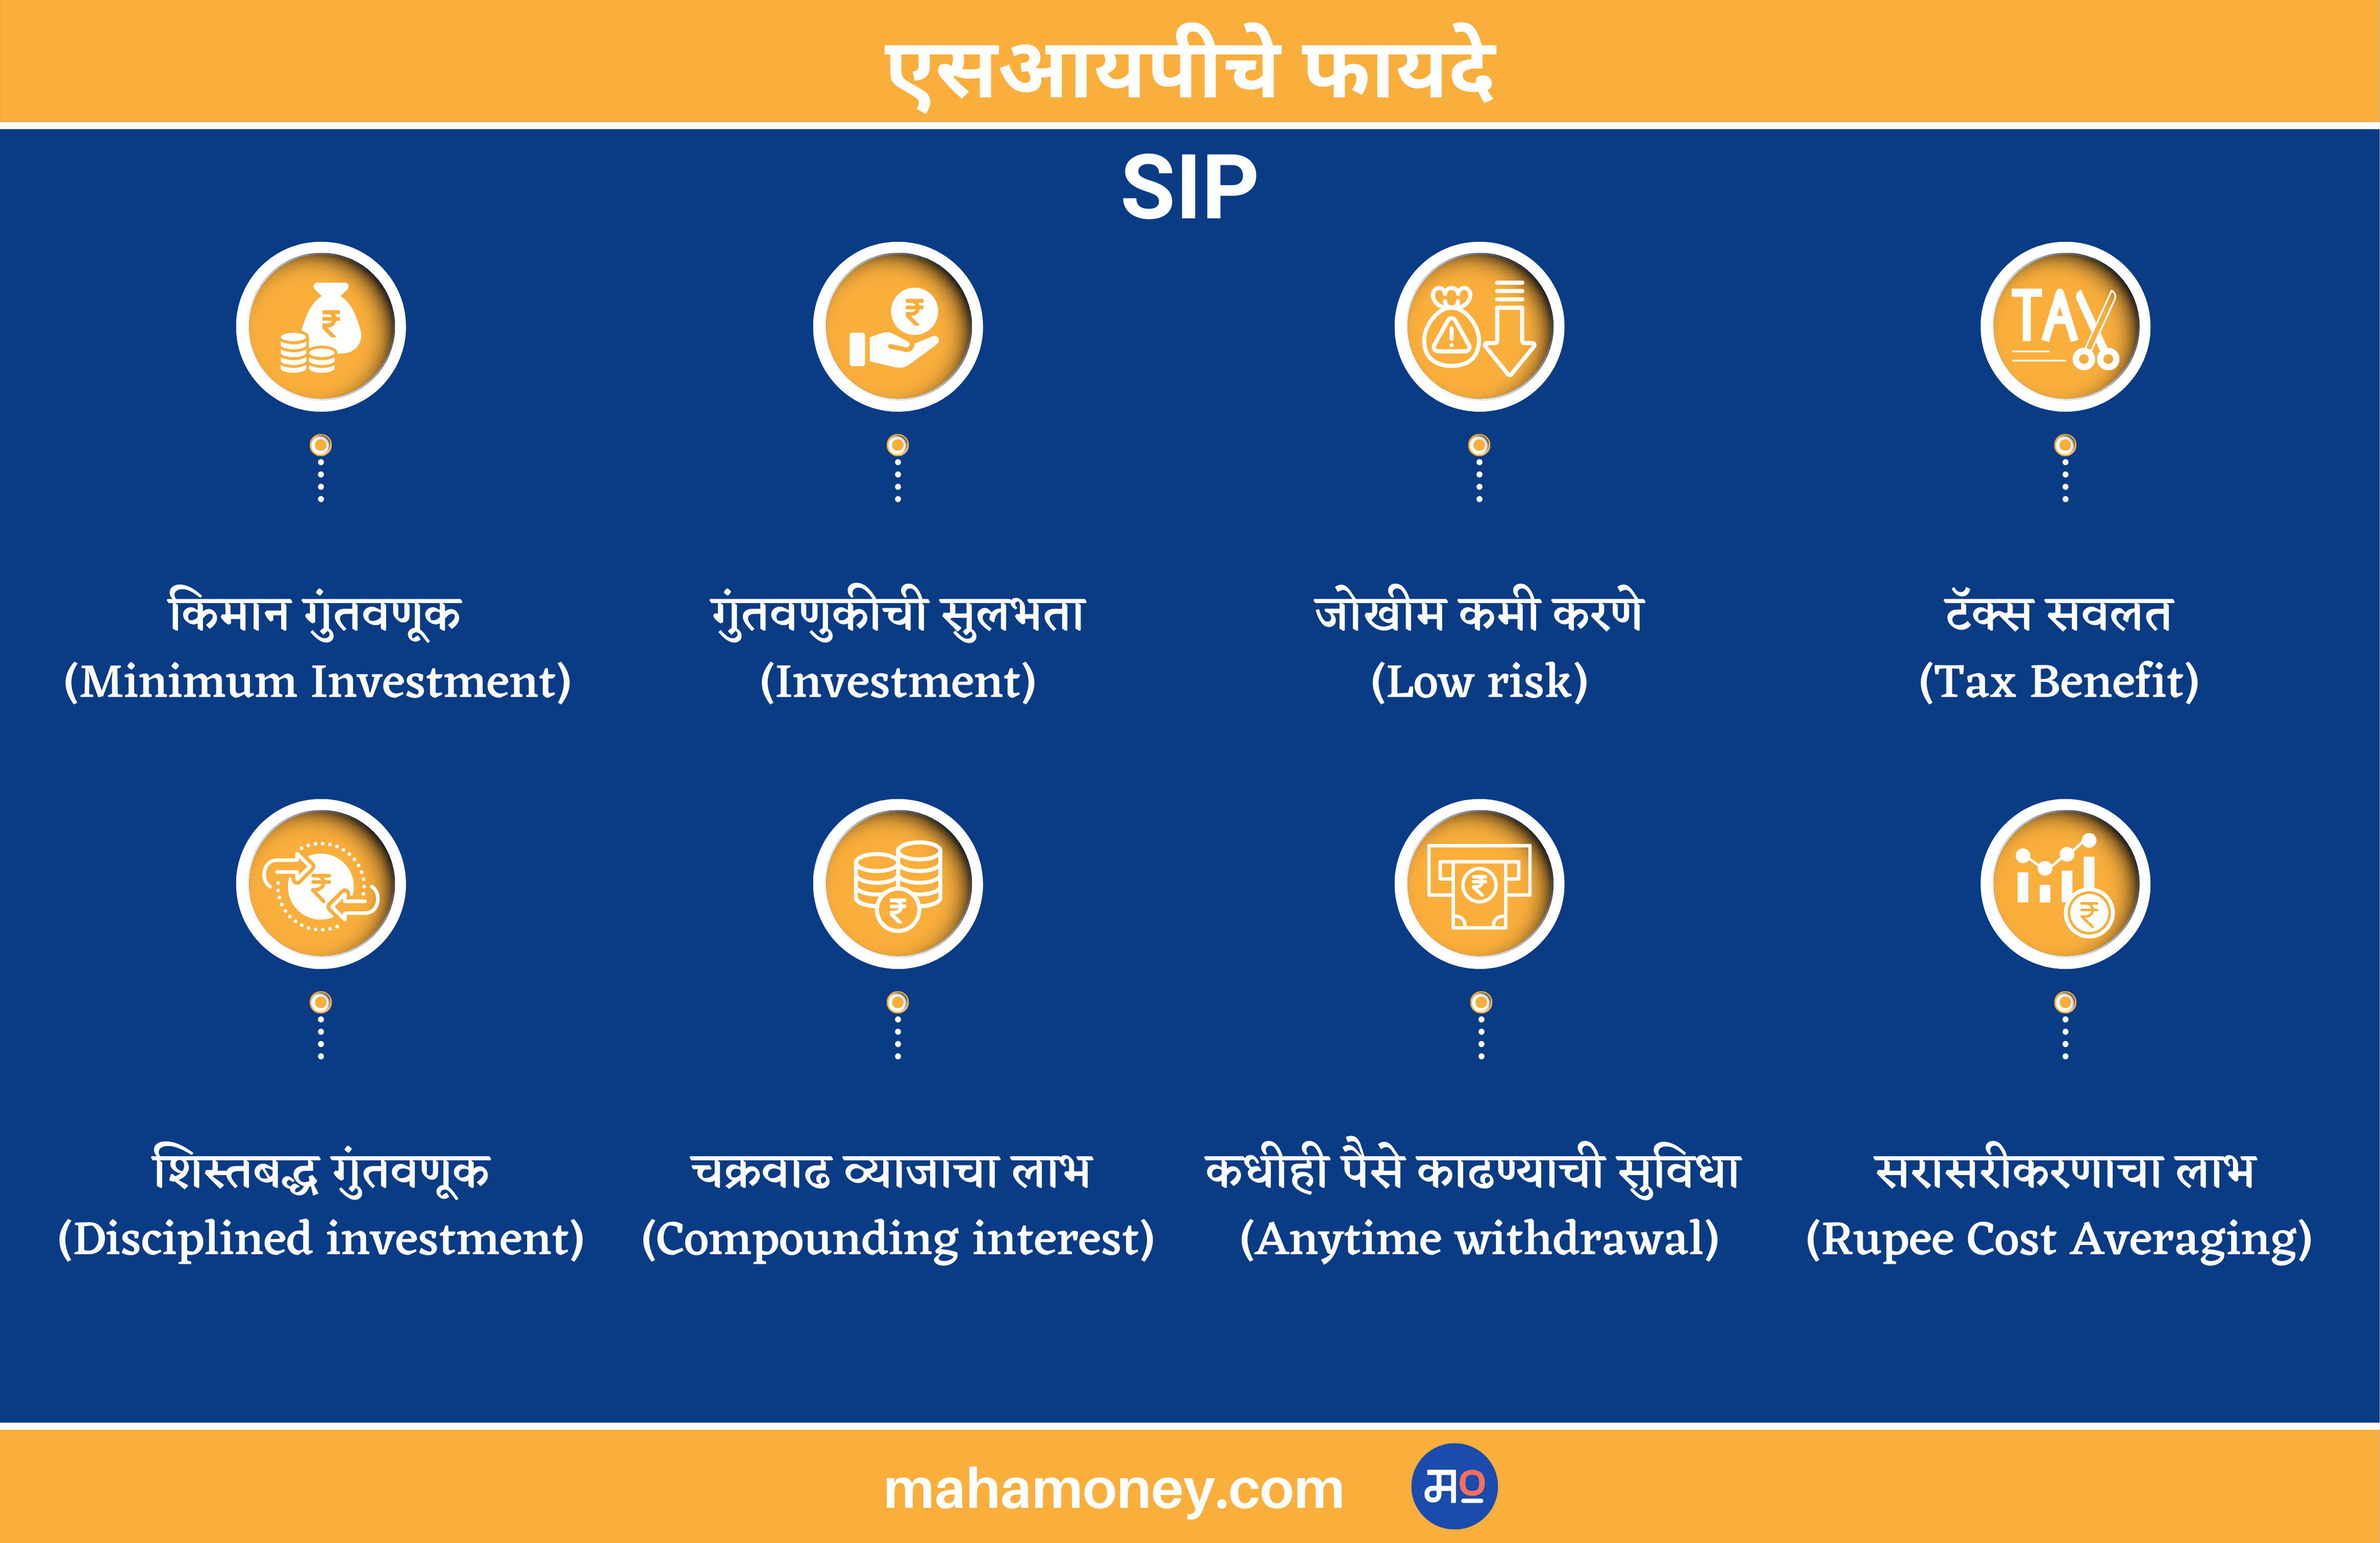 Benefits of SIP